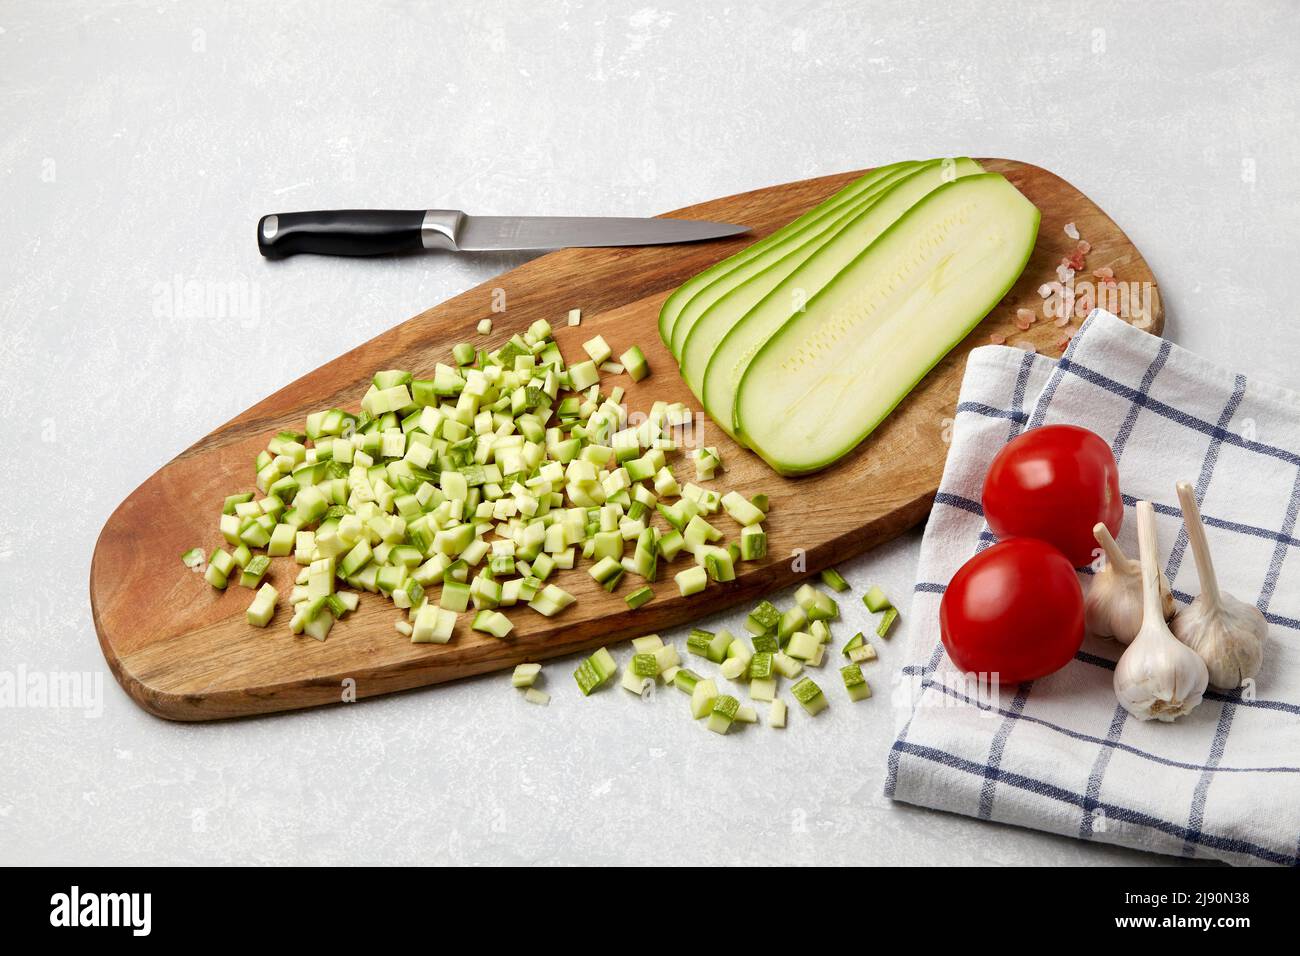 Affettare le zucchine di zucchine su un tagliere di legno, coltello, pomodori, aglio e tovagliolo su una tavola leggera in cemento Foto Stock